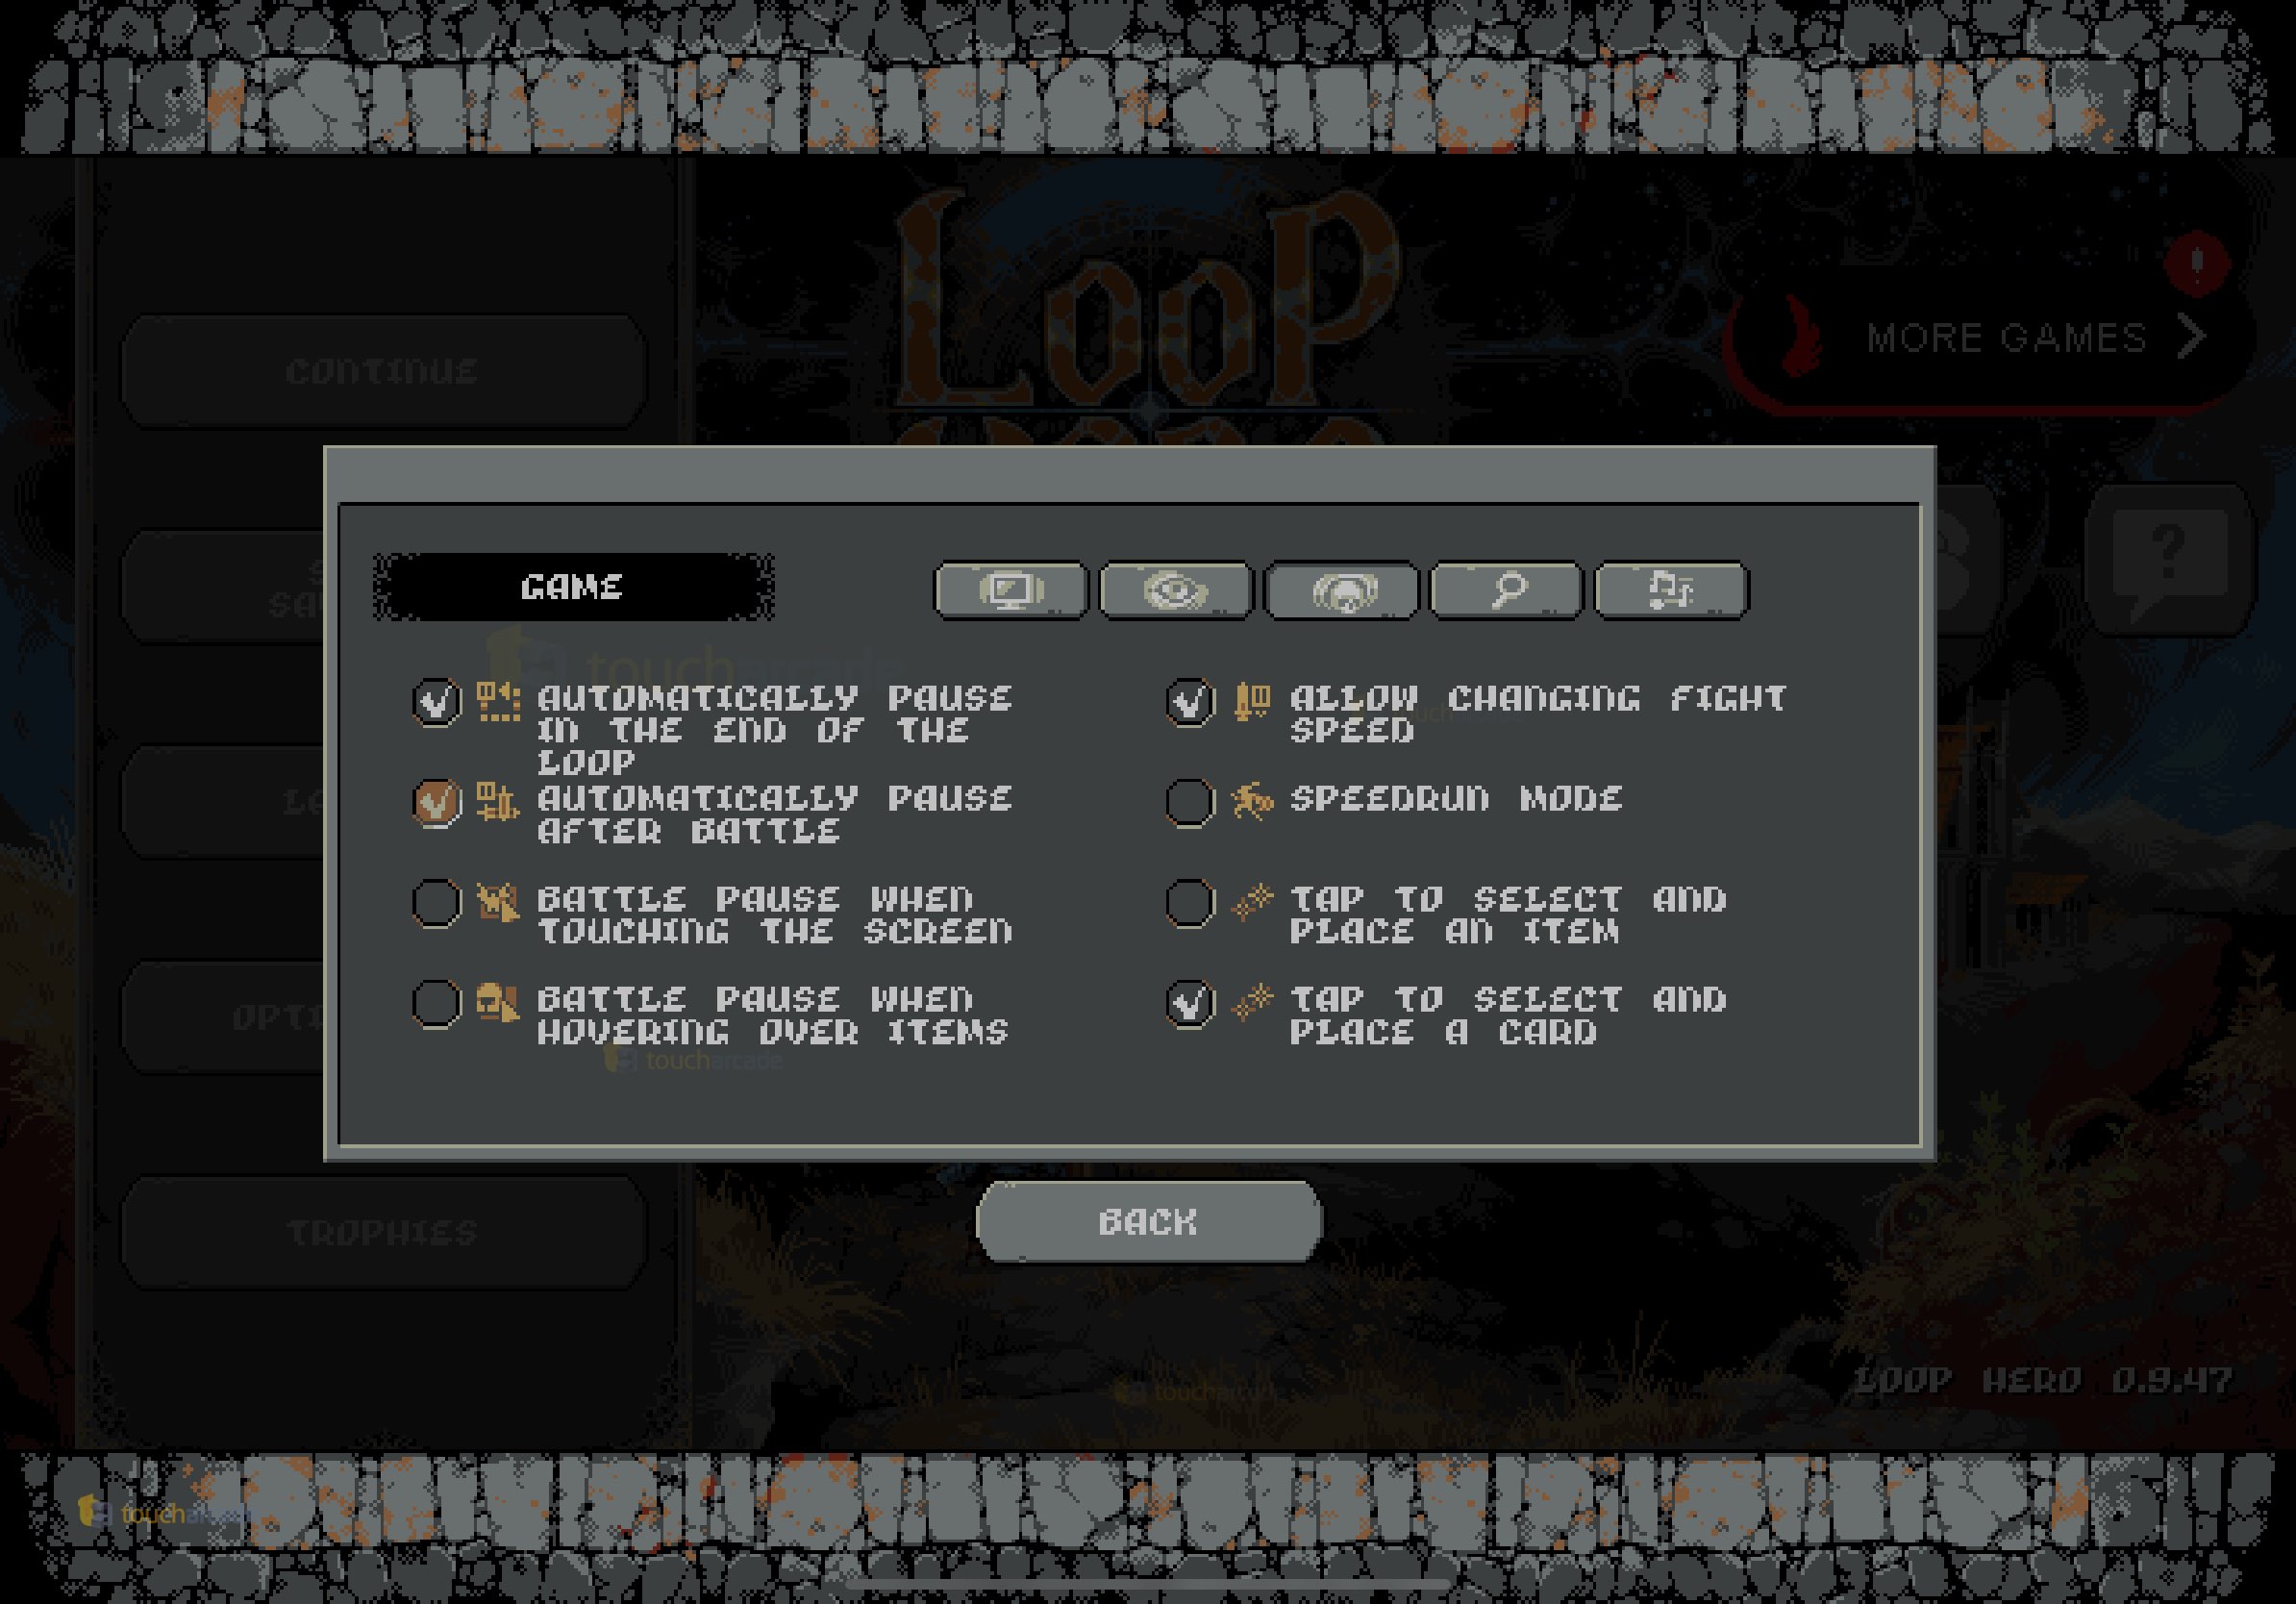 loop-hero-mobile-options.jpg